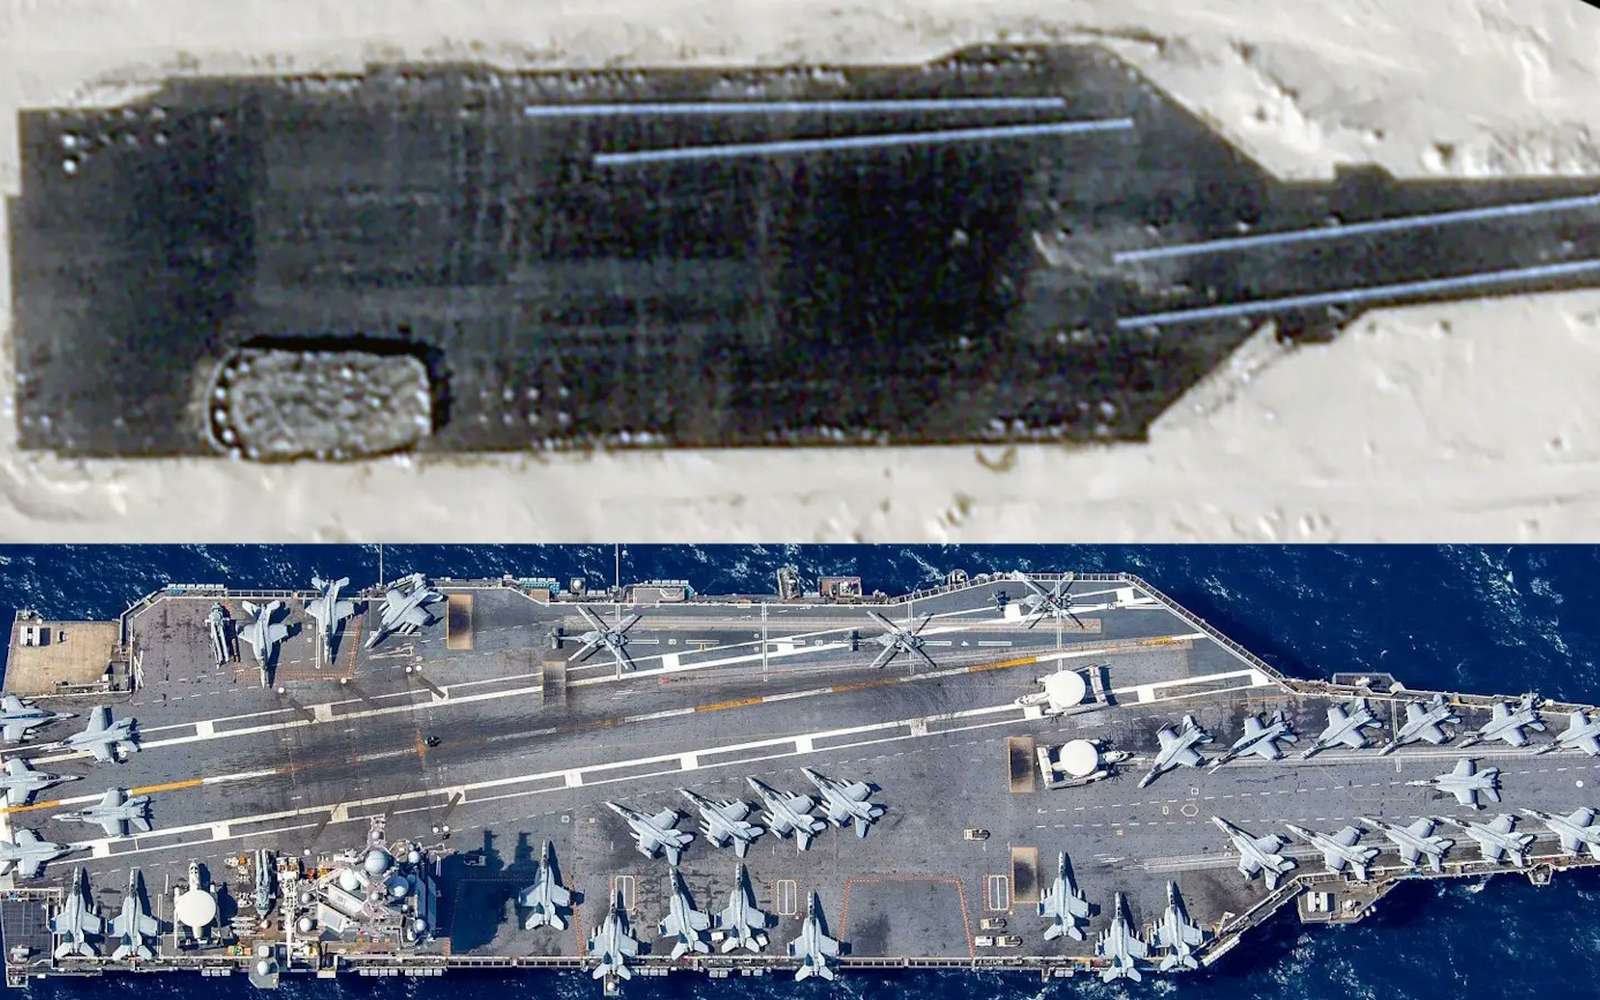 Des images satellites révèlent une maquette à taille réelle d'un porte-avions américain dans le désert en Chine